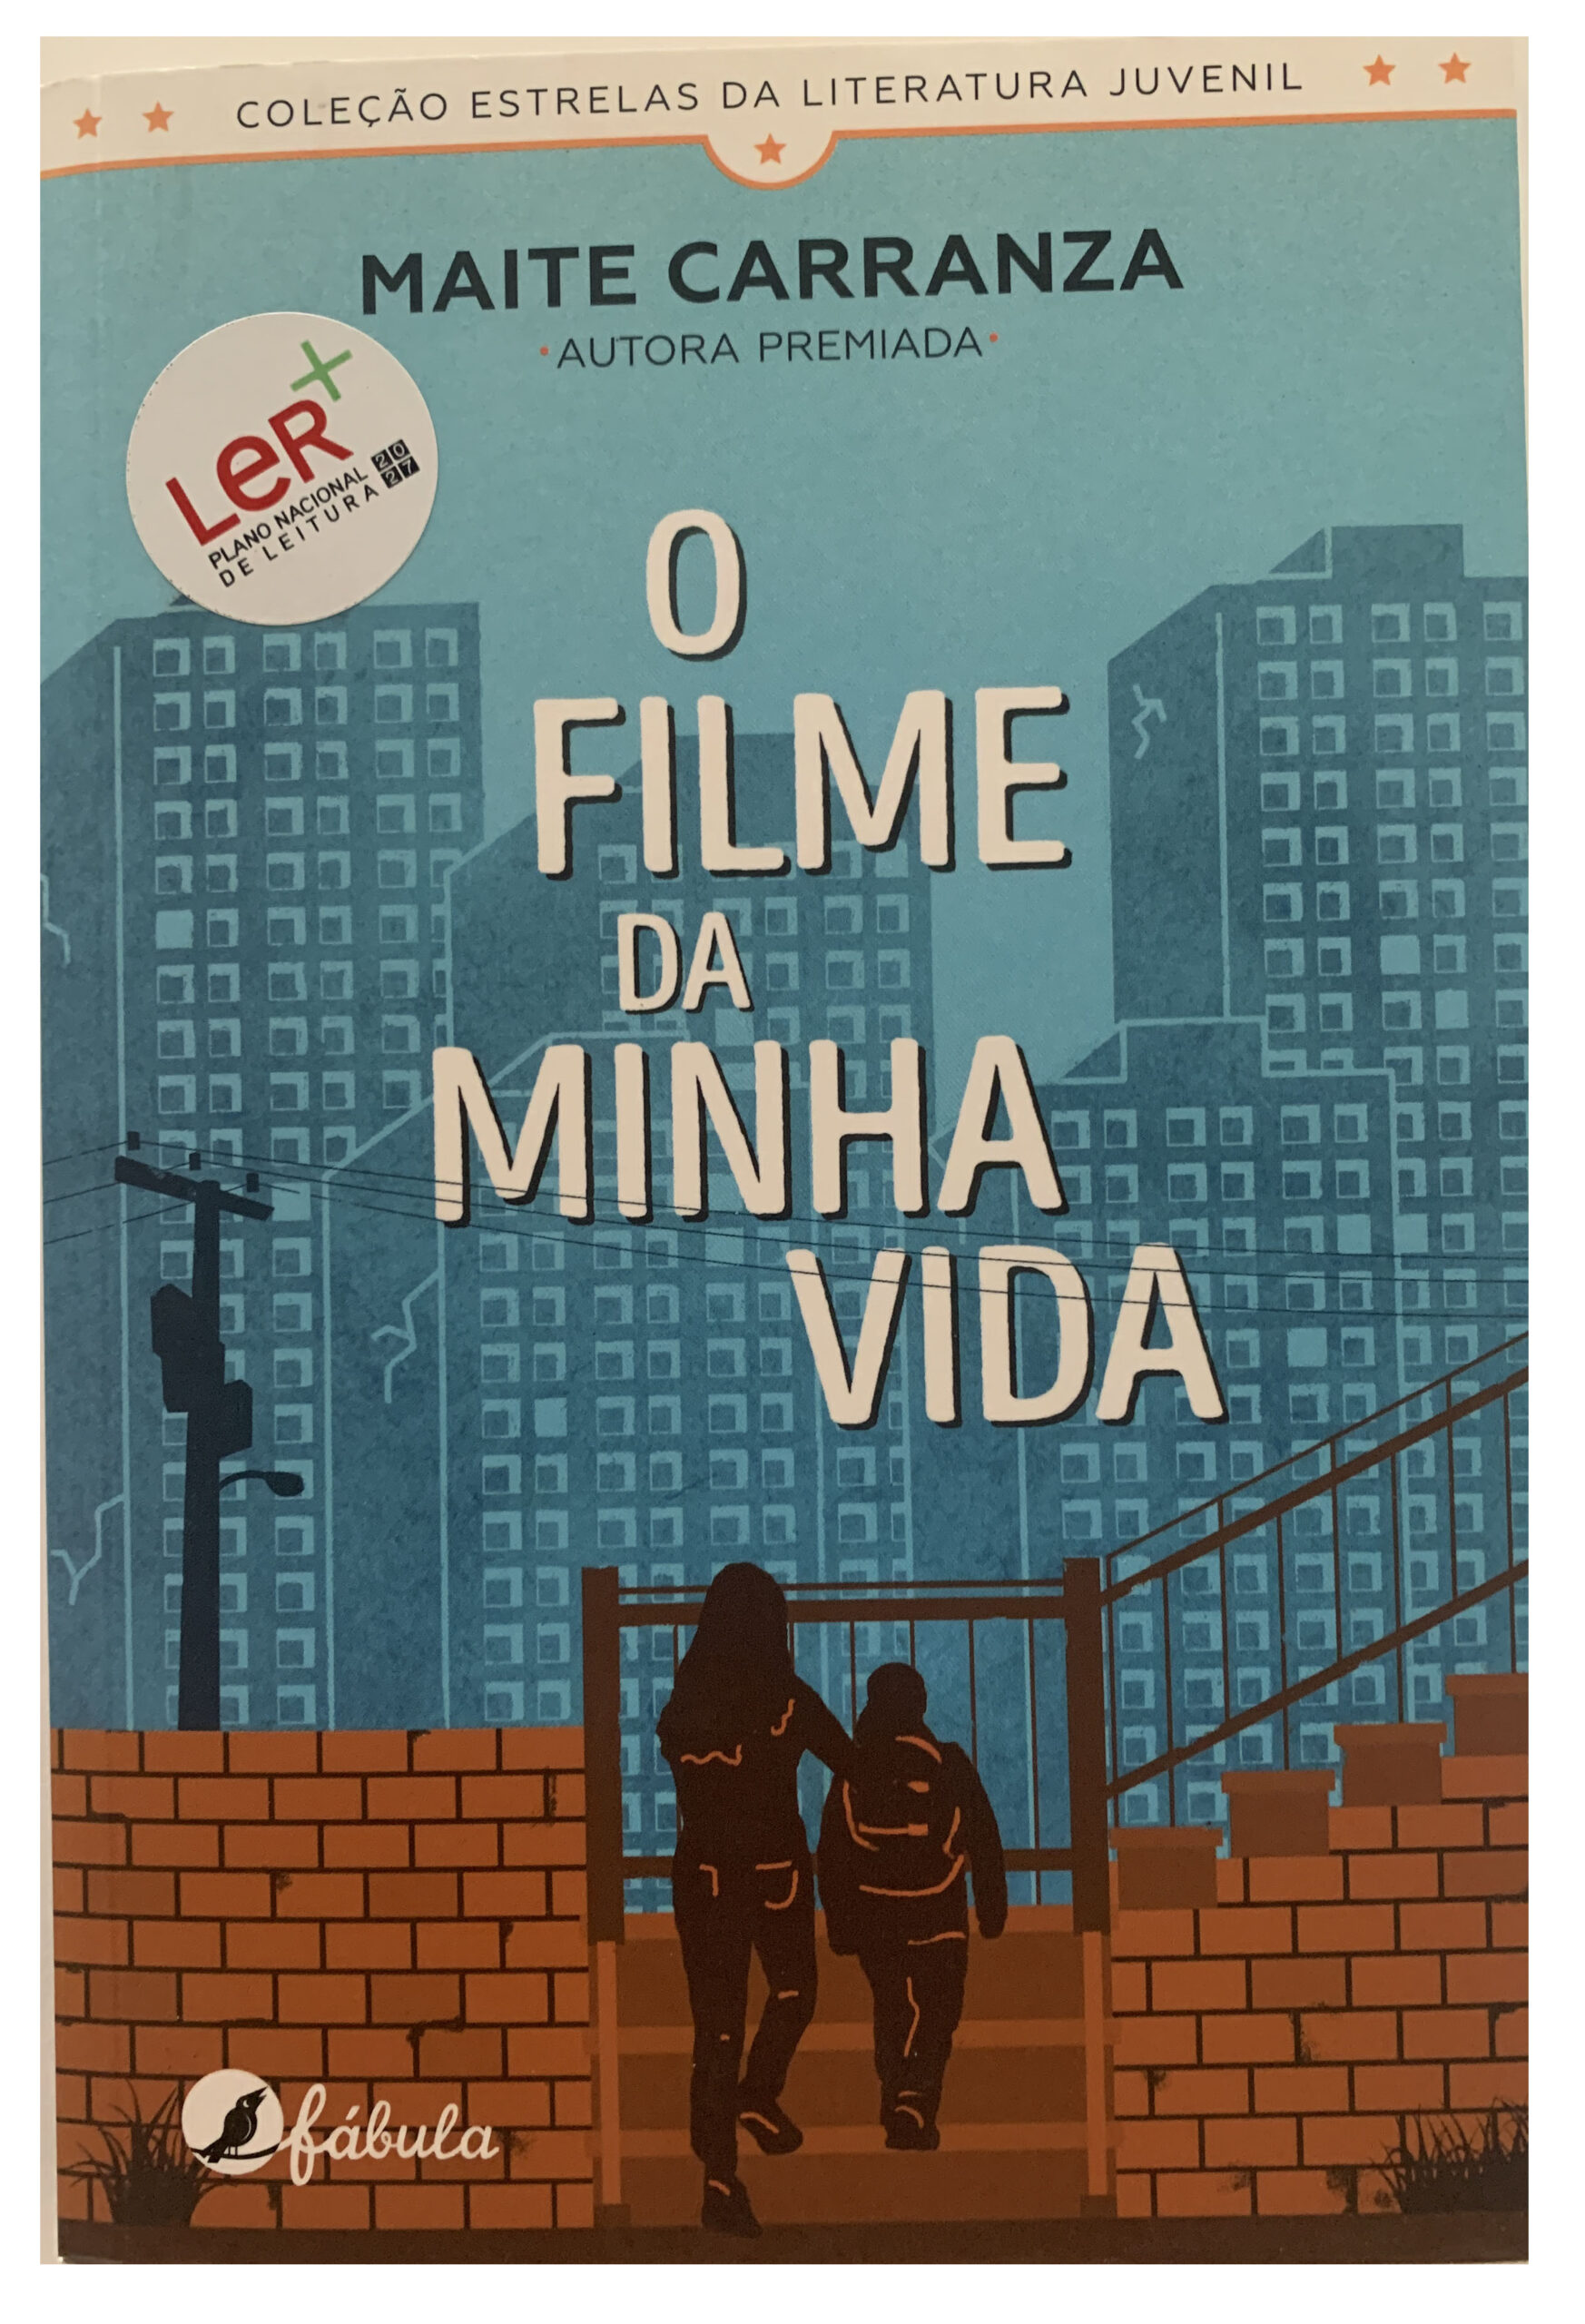 THE MOVIE OF MY LIFE, (aka O FILME DA MINHA VIDA), Brazilian